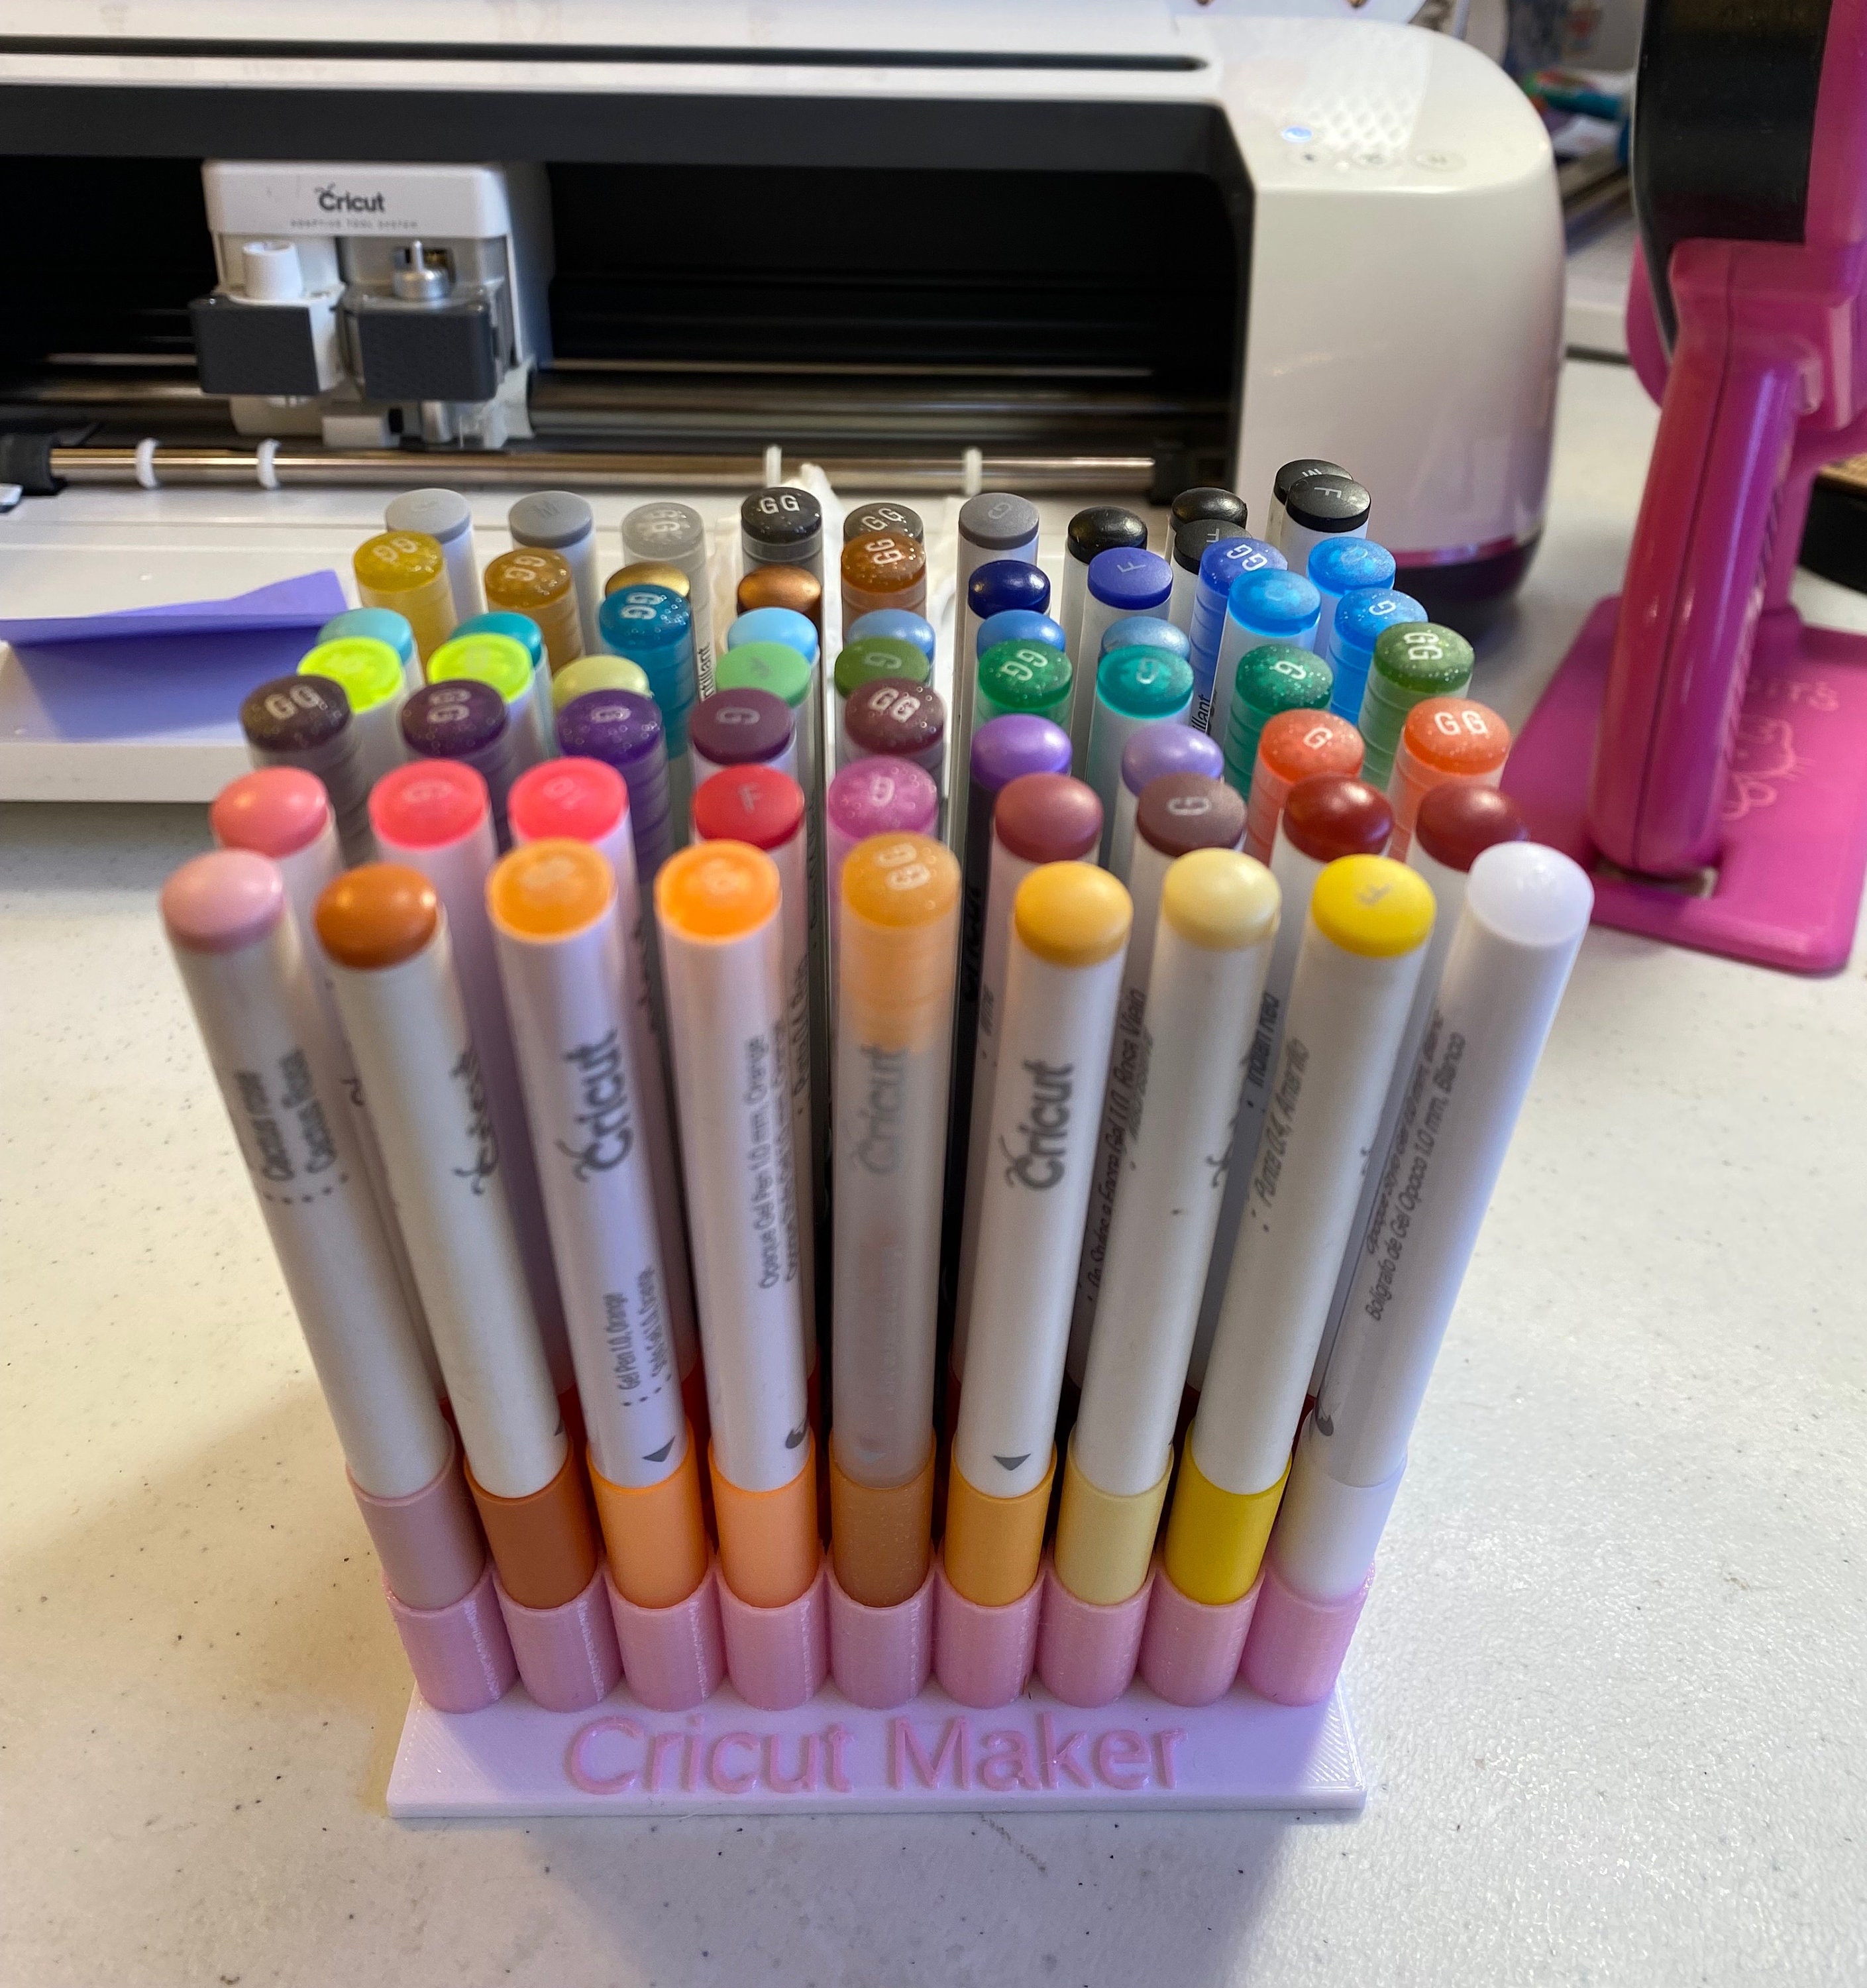 Cricut Maker/explorer or Cricut Joy Marker Holder in Custom Colors